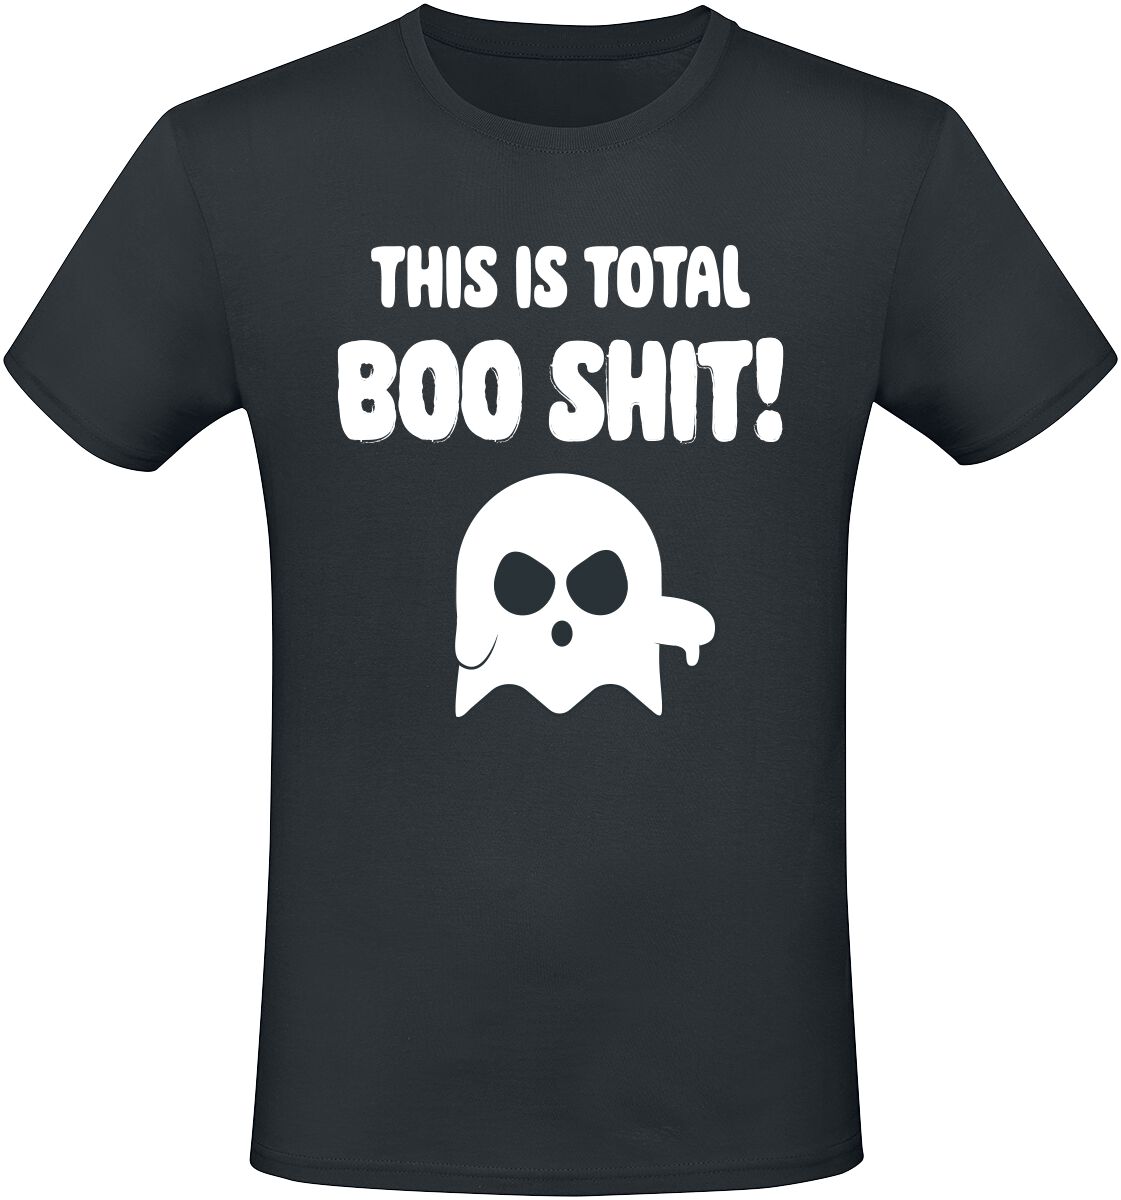 Sprüche This Is Total Boo Shit! T-Shirt schwarz in XL